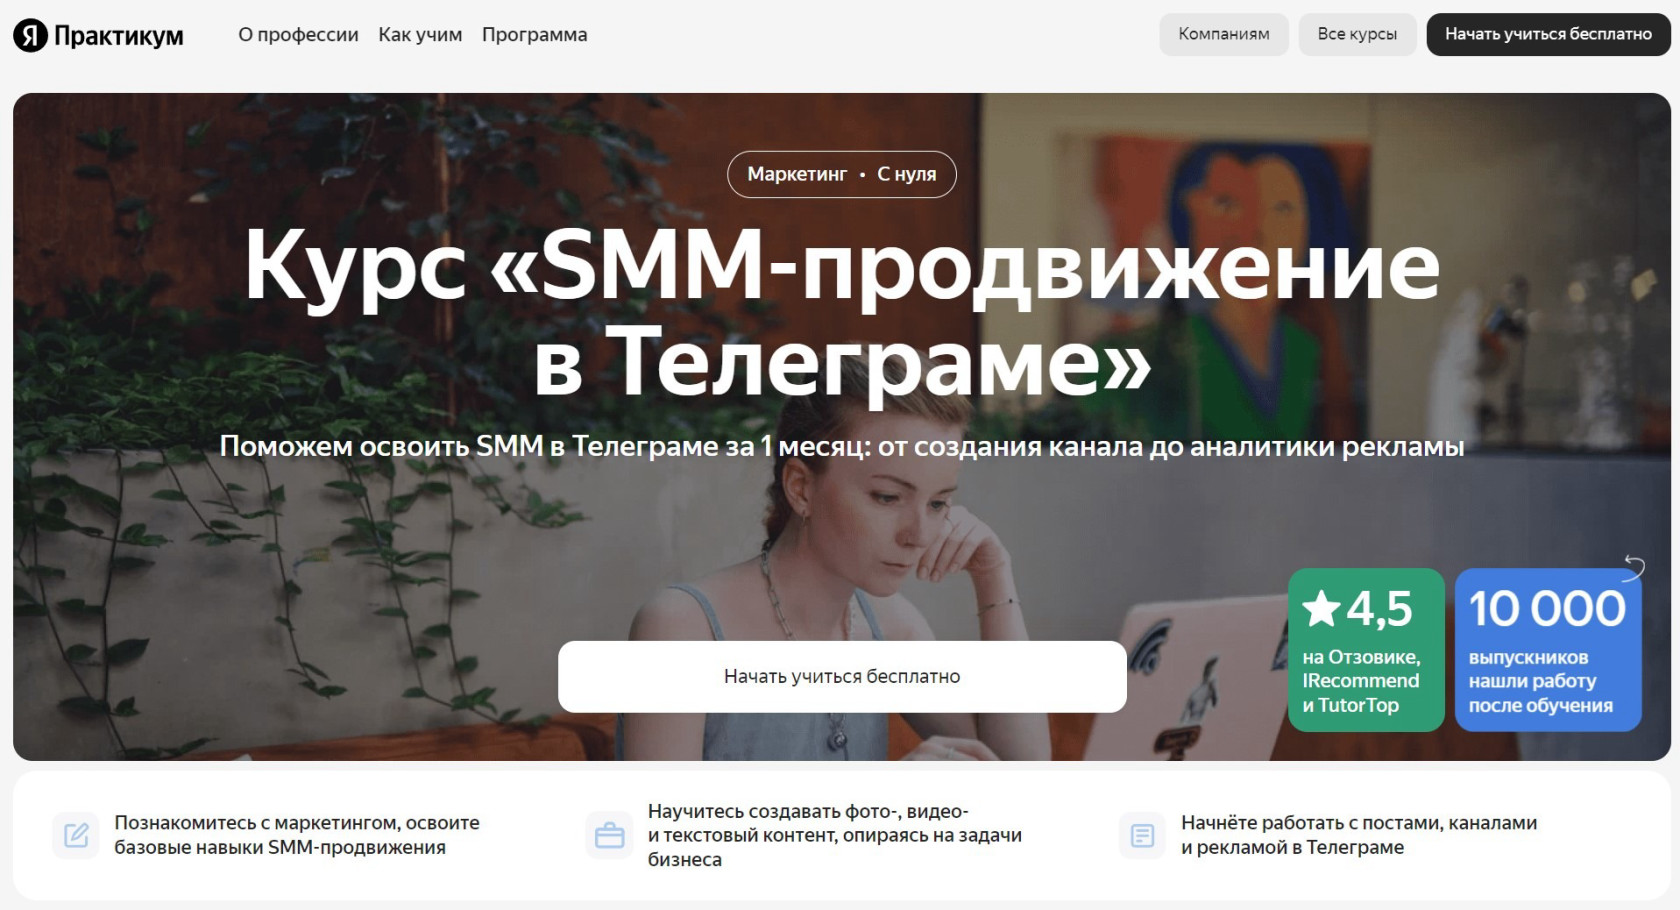 "SMM-продвижение в Телеграме" от Яндекс Практикума